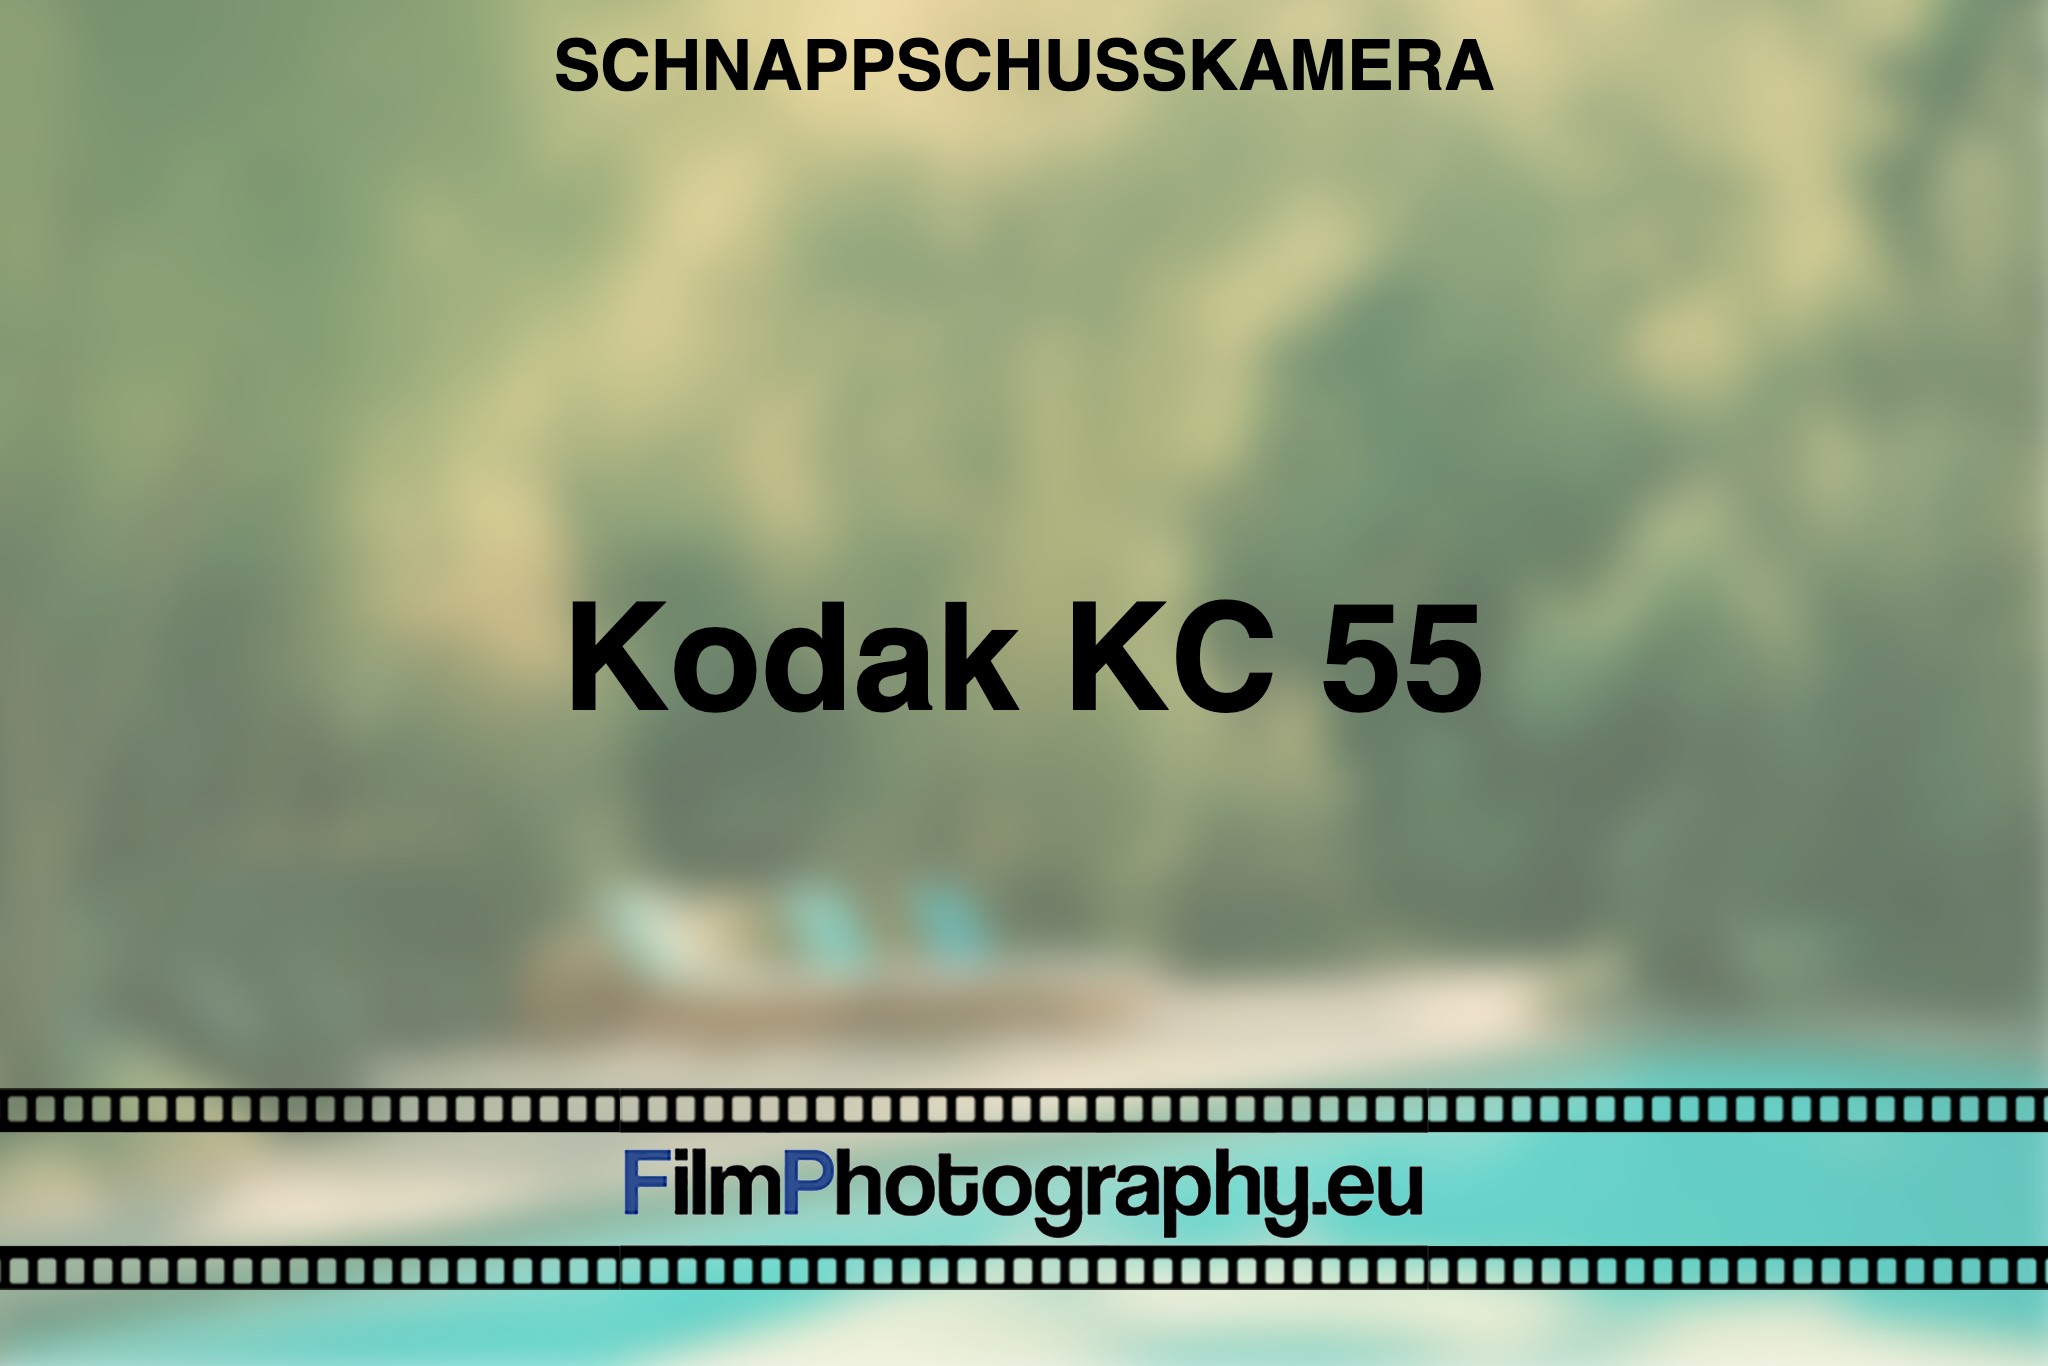 kodak-kc-55-schnappschusskamera-bnv